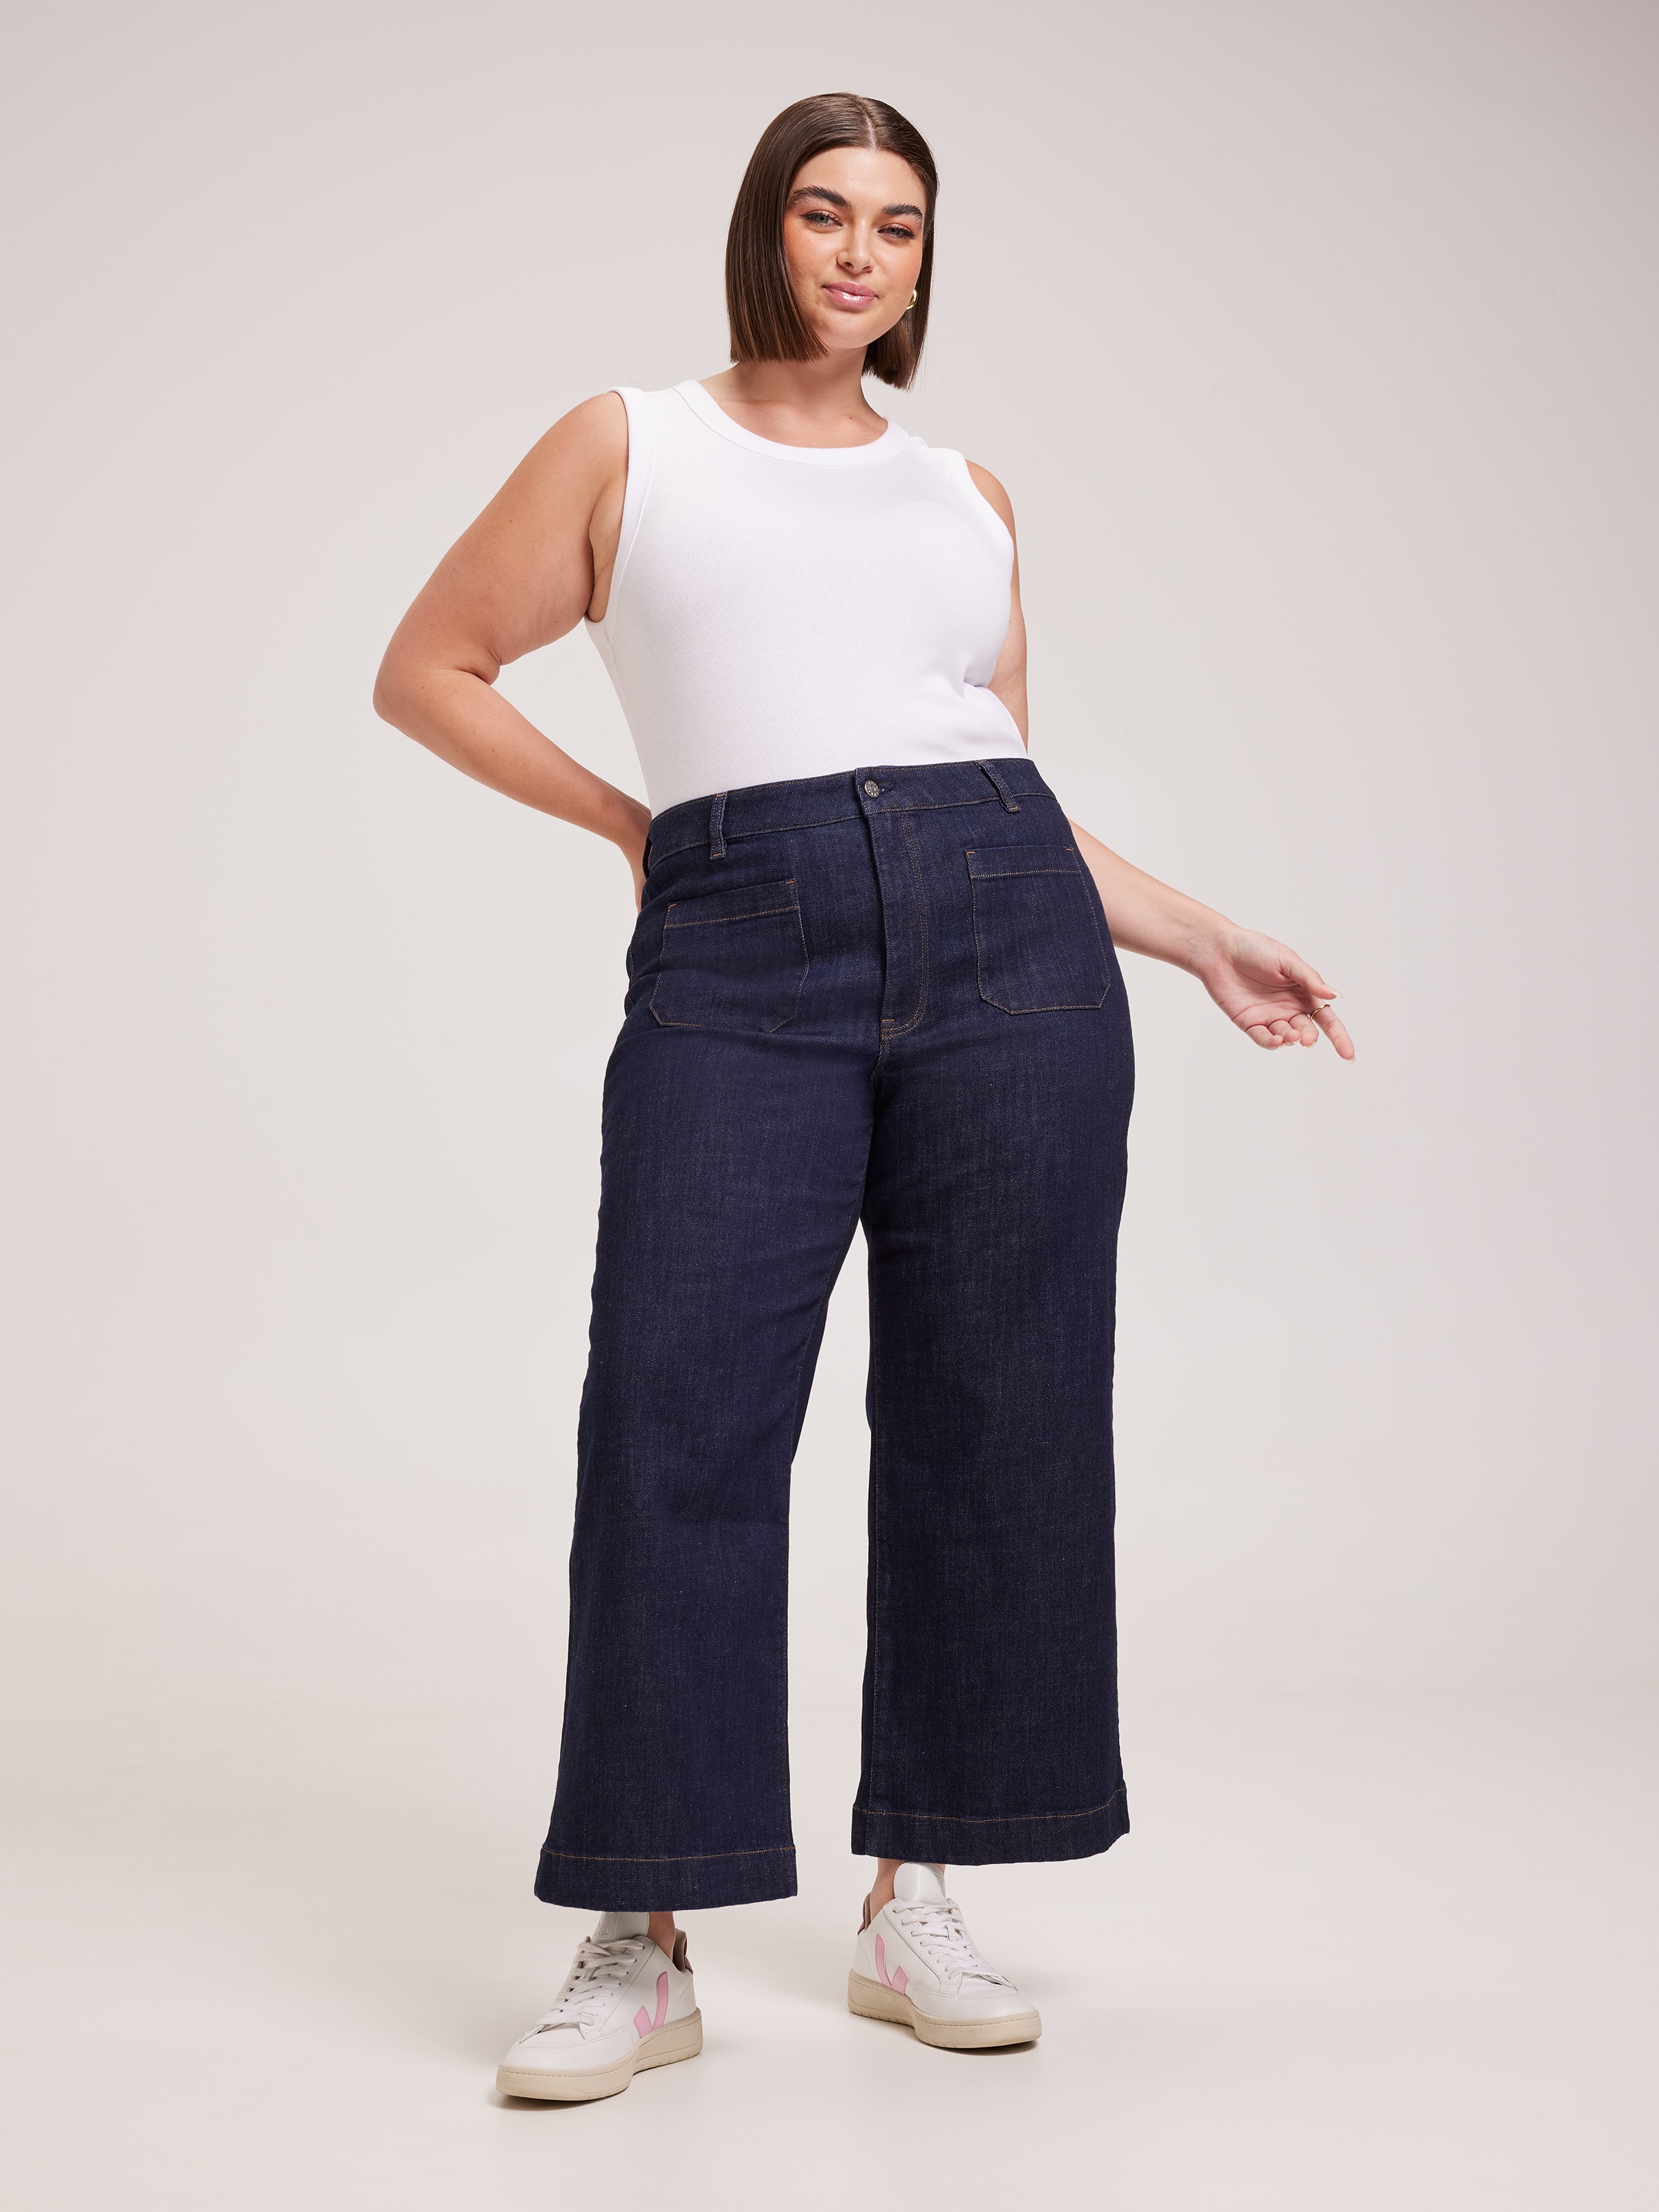 Blue Denim Capri Womens Jeans Plus Size 14 16 18 20 22 24 - Jeans